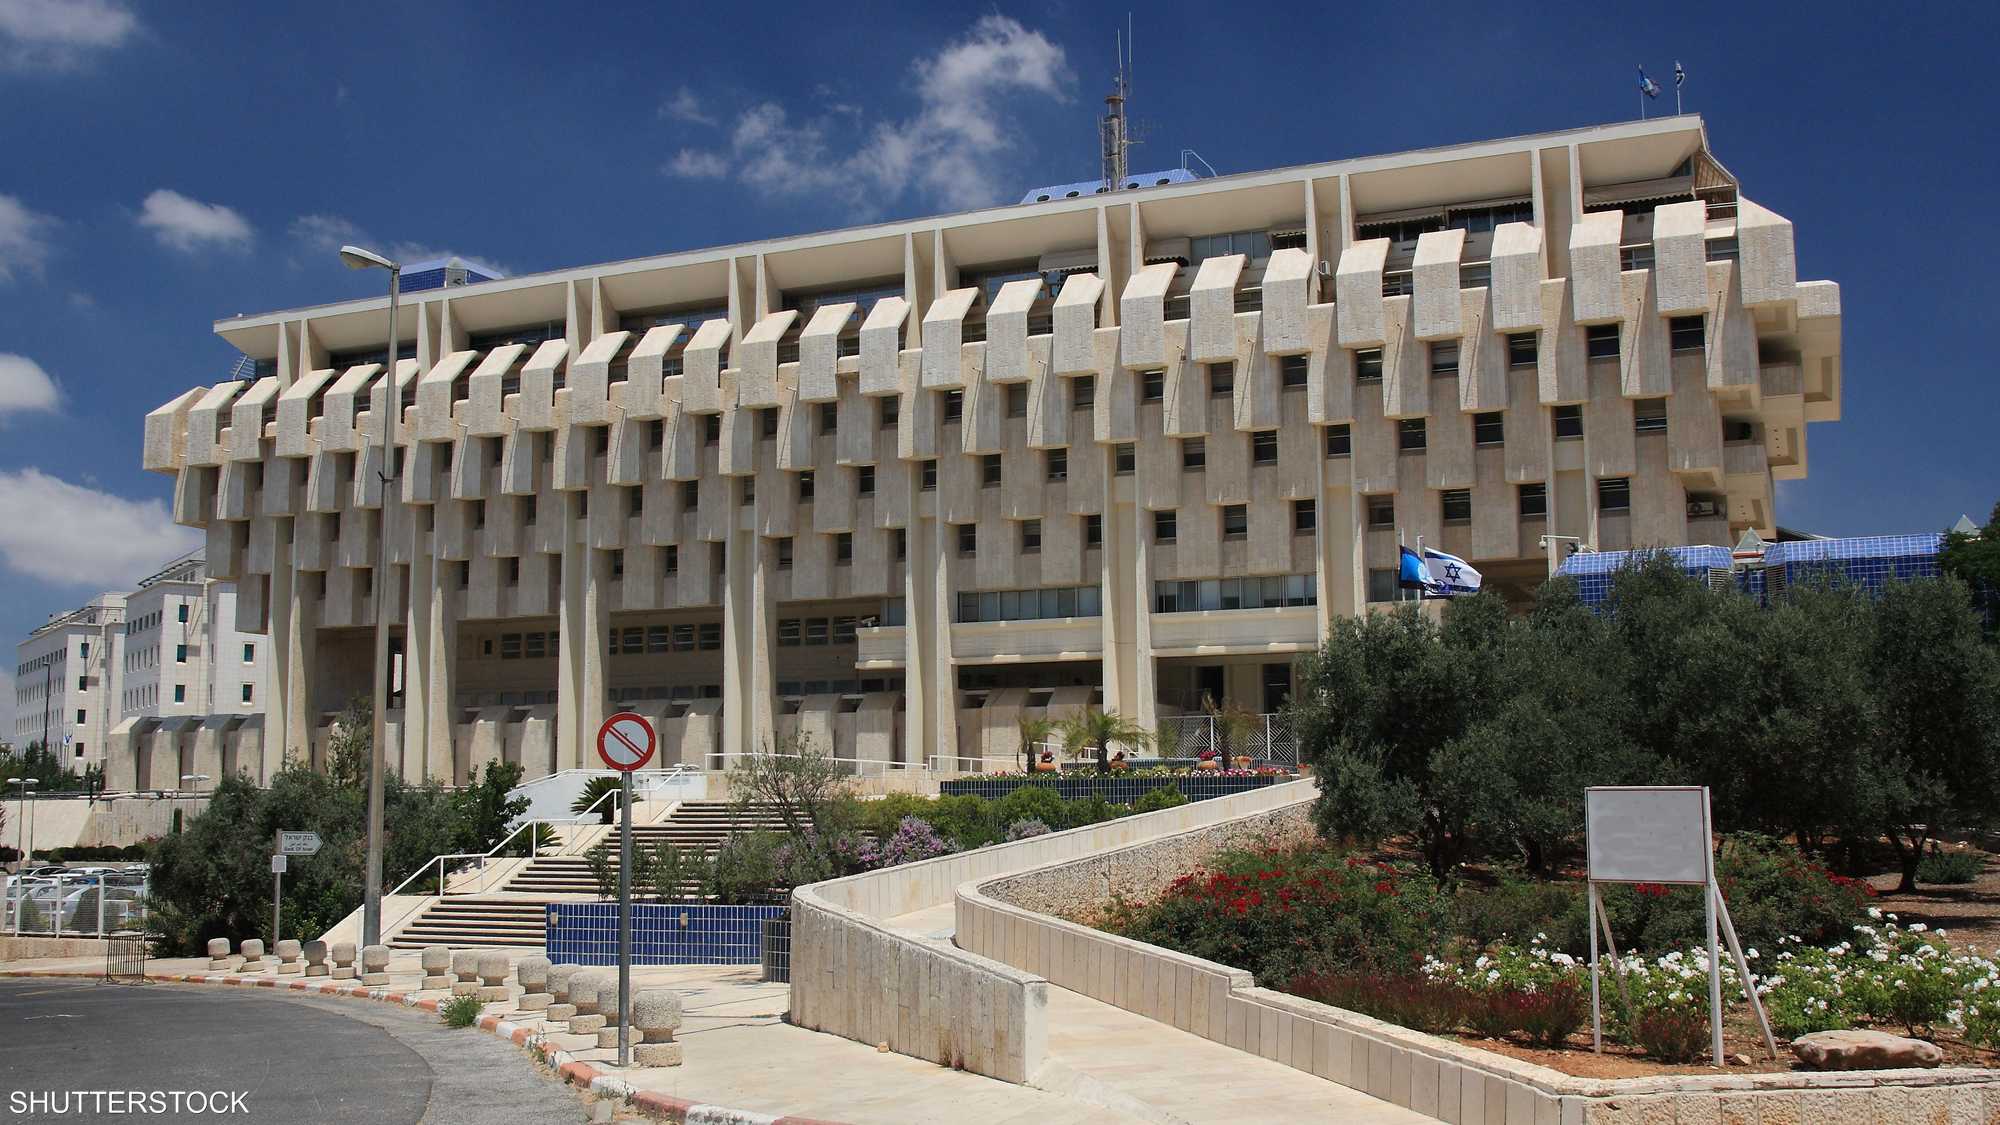 Сайт банка израиля